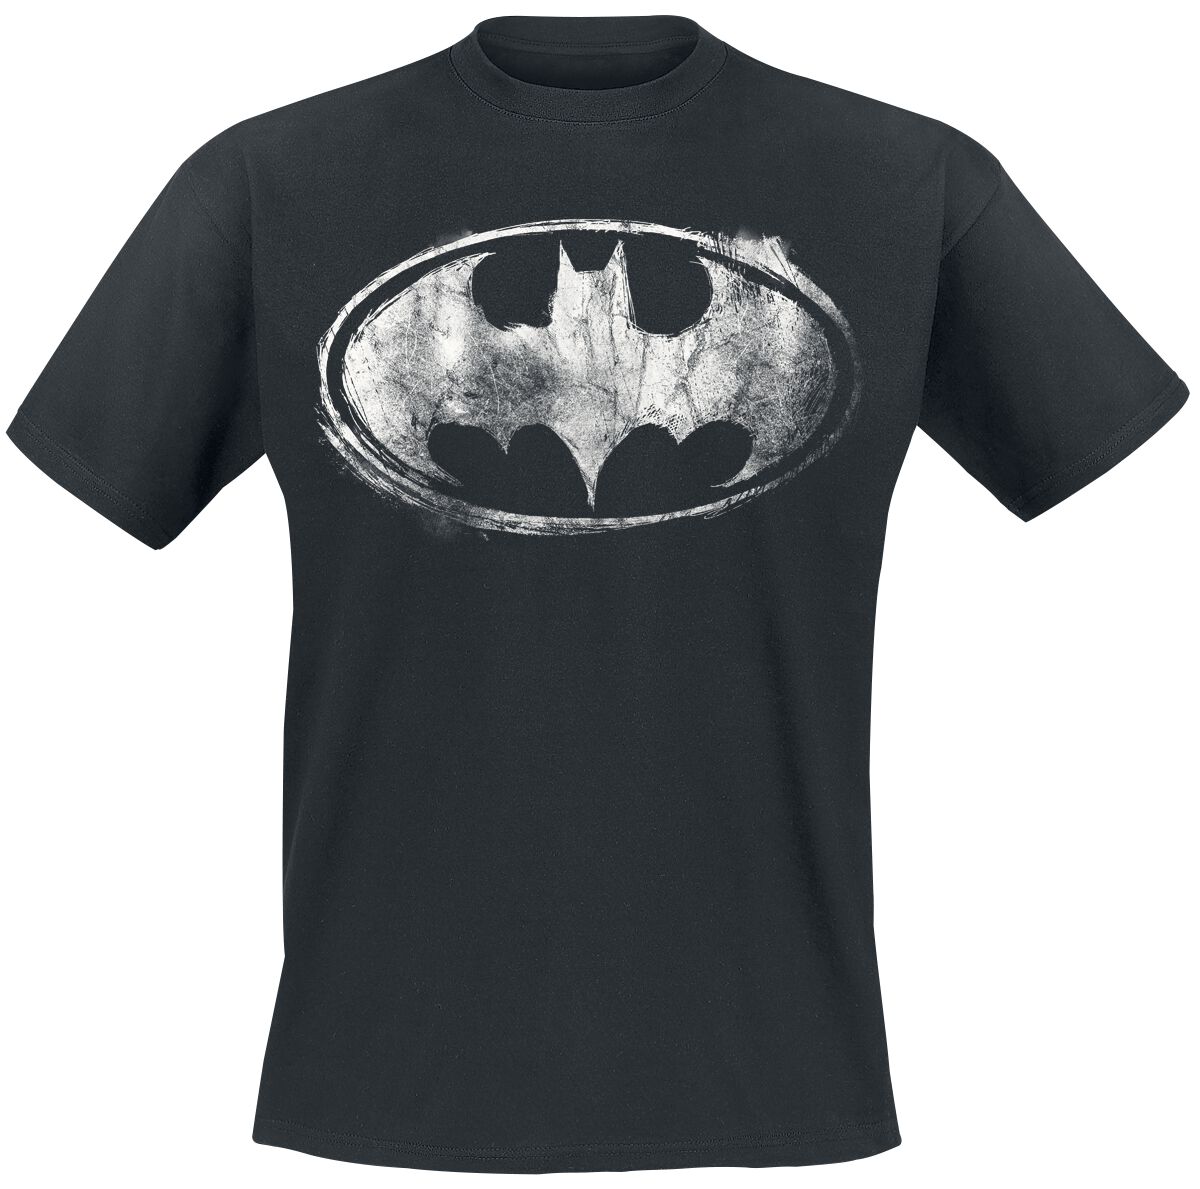 Batman - DC Comics T-Shirt - Smudge Logo - XL bis XXL - für Männer - Größe XL - schwarz  - EMP exklusives Merchandise!